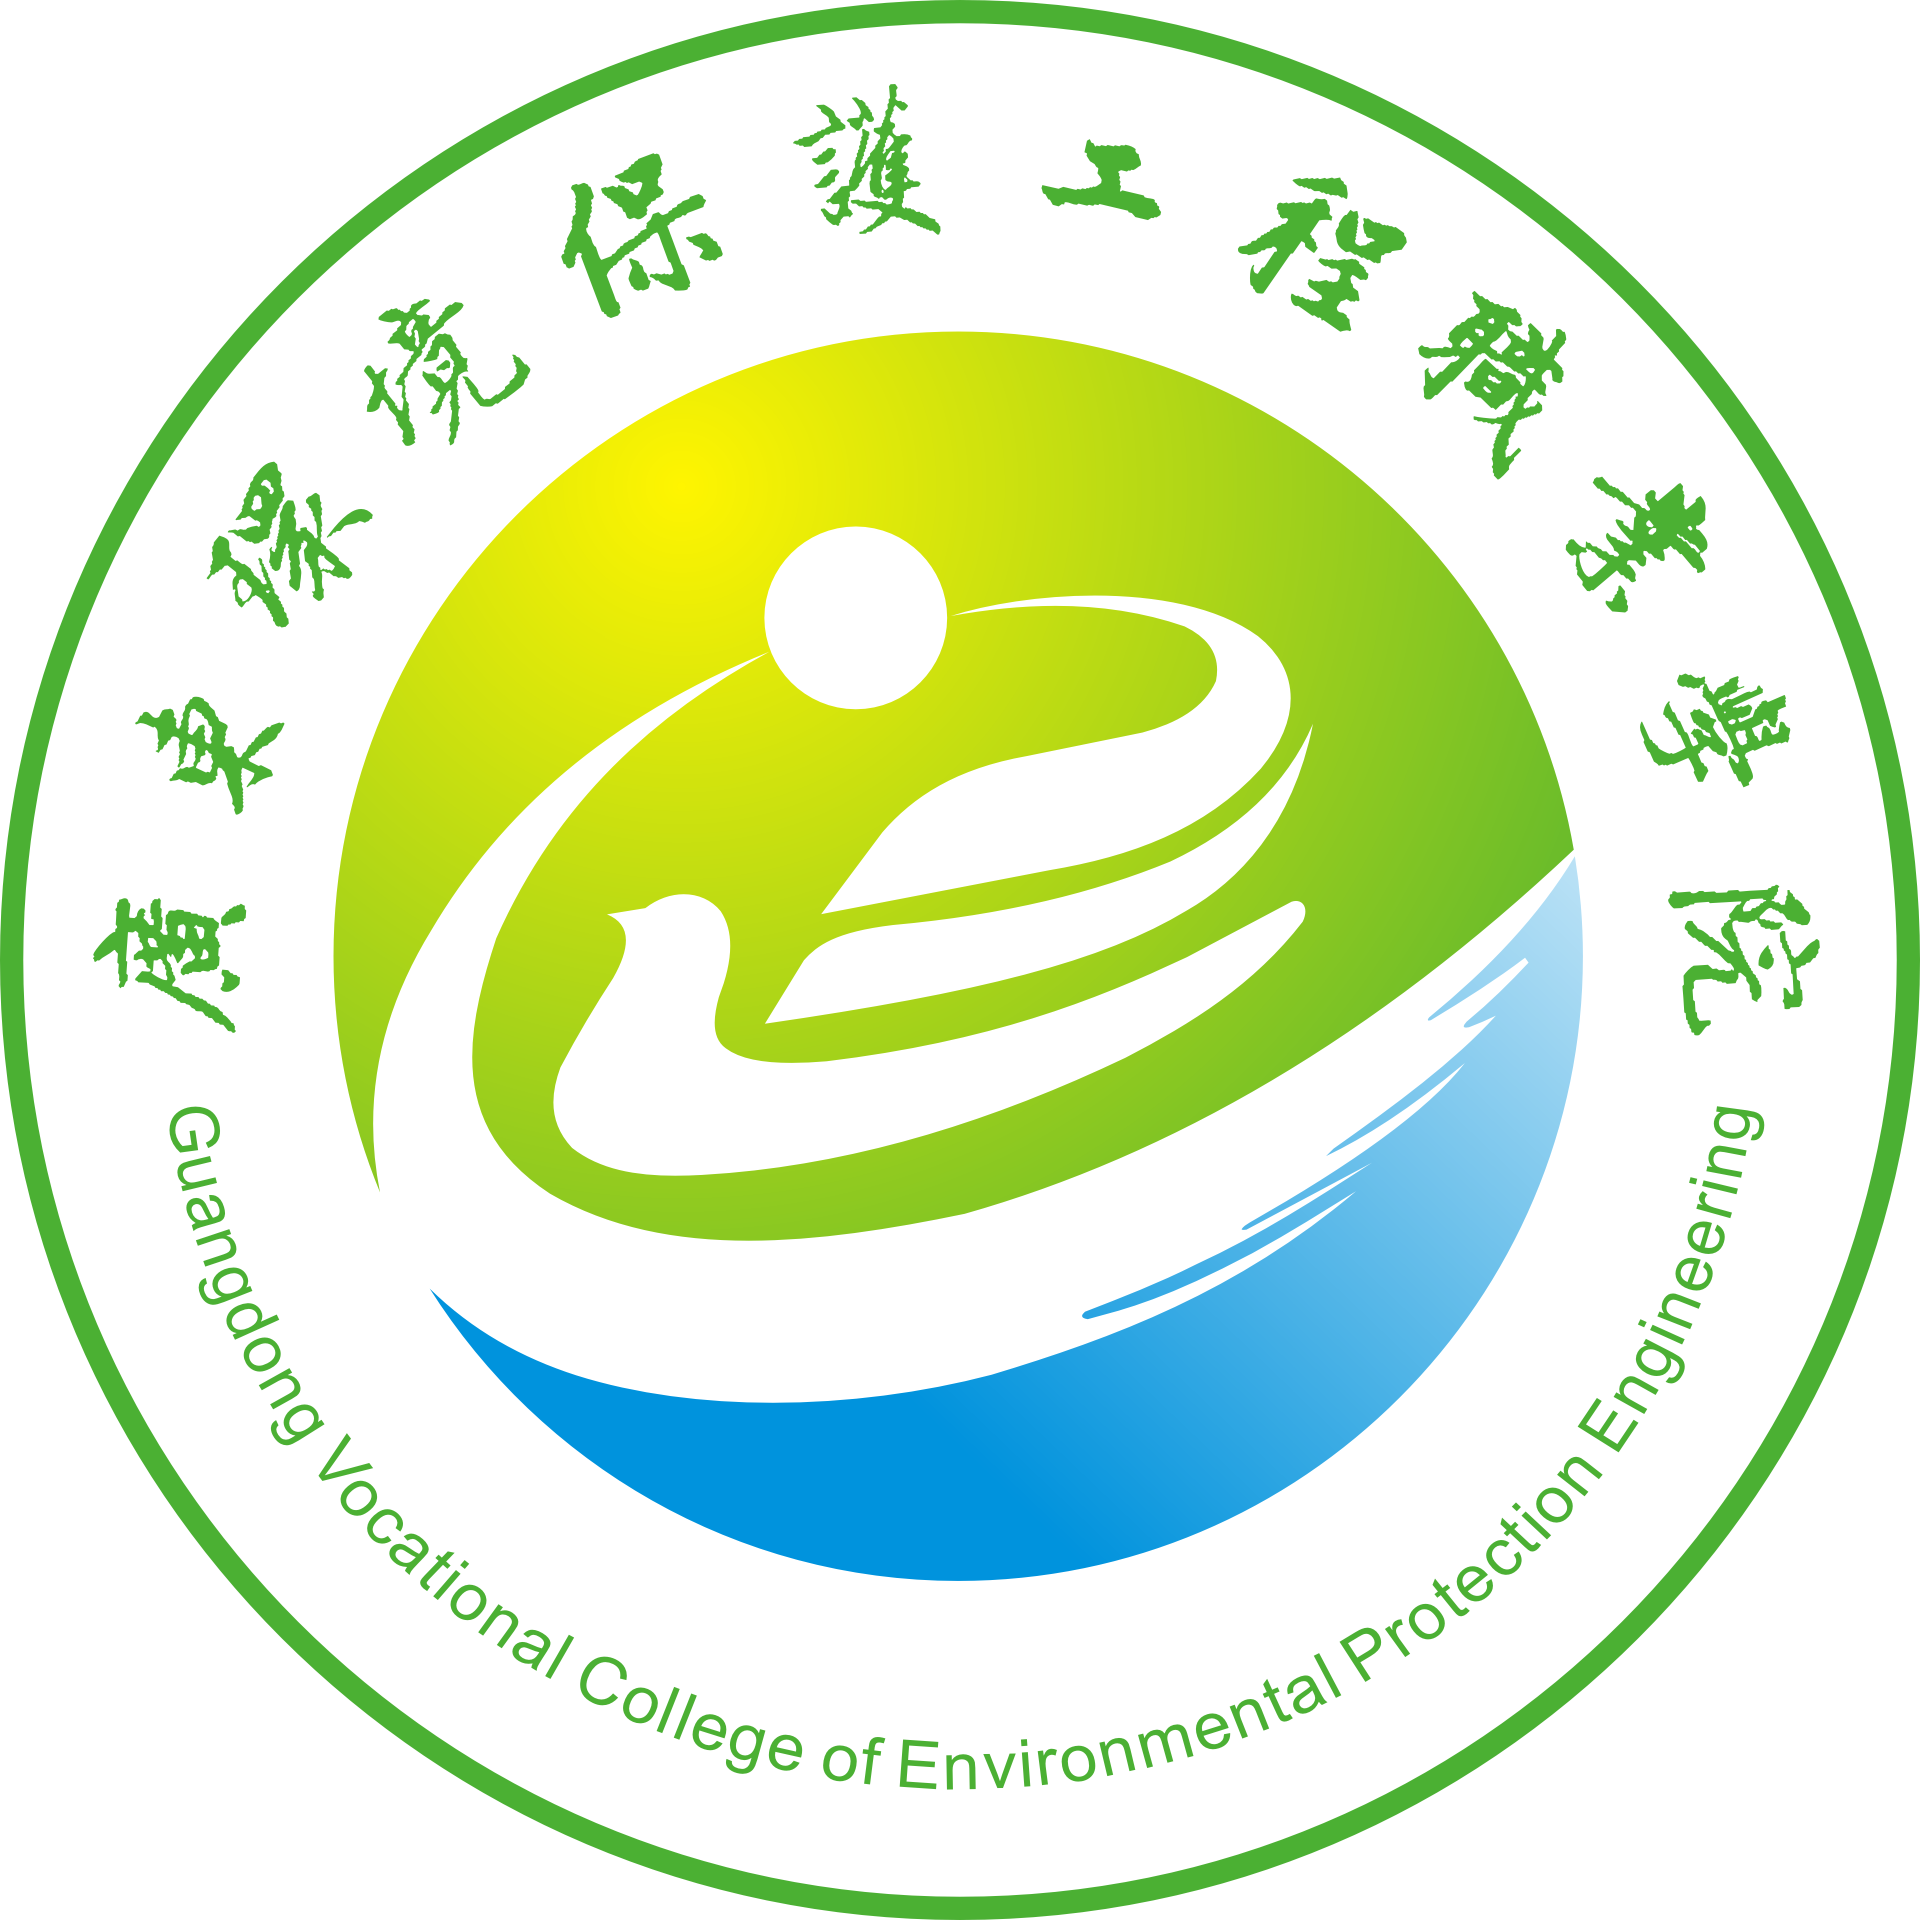 廣東環境保護工程職業學院 院徽